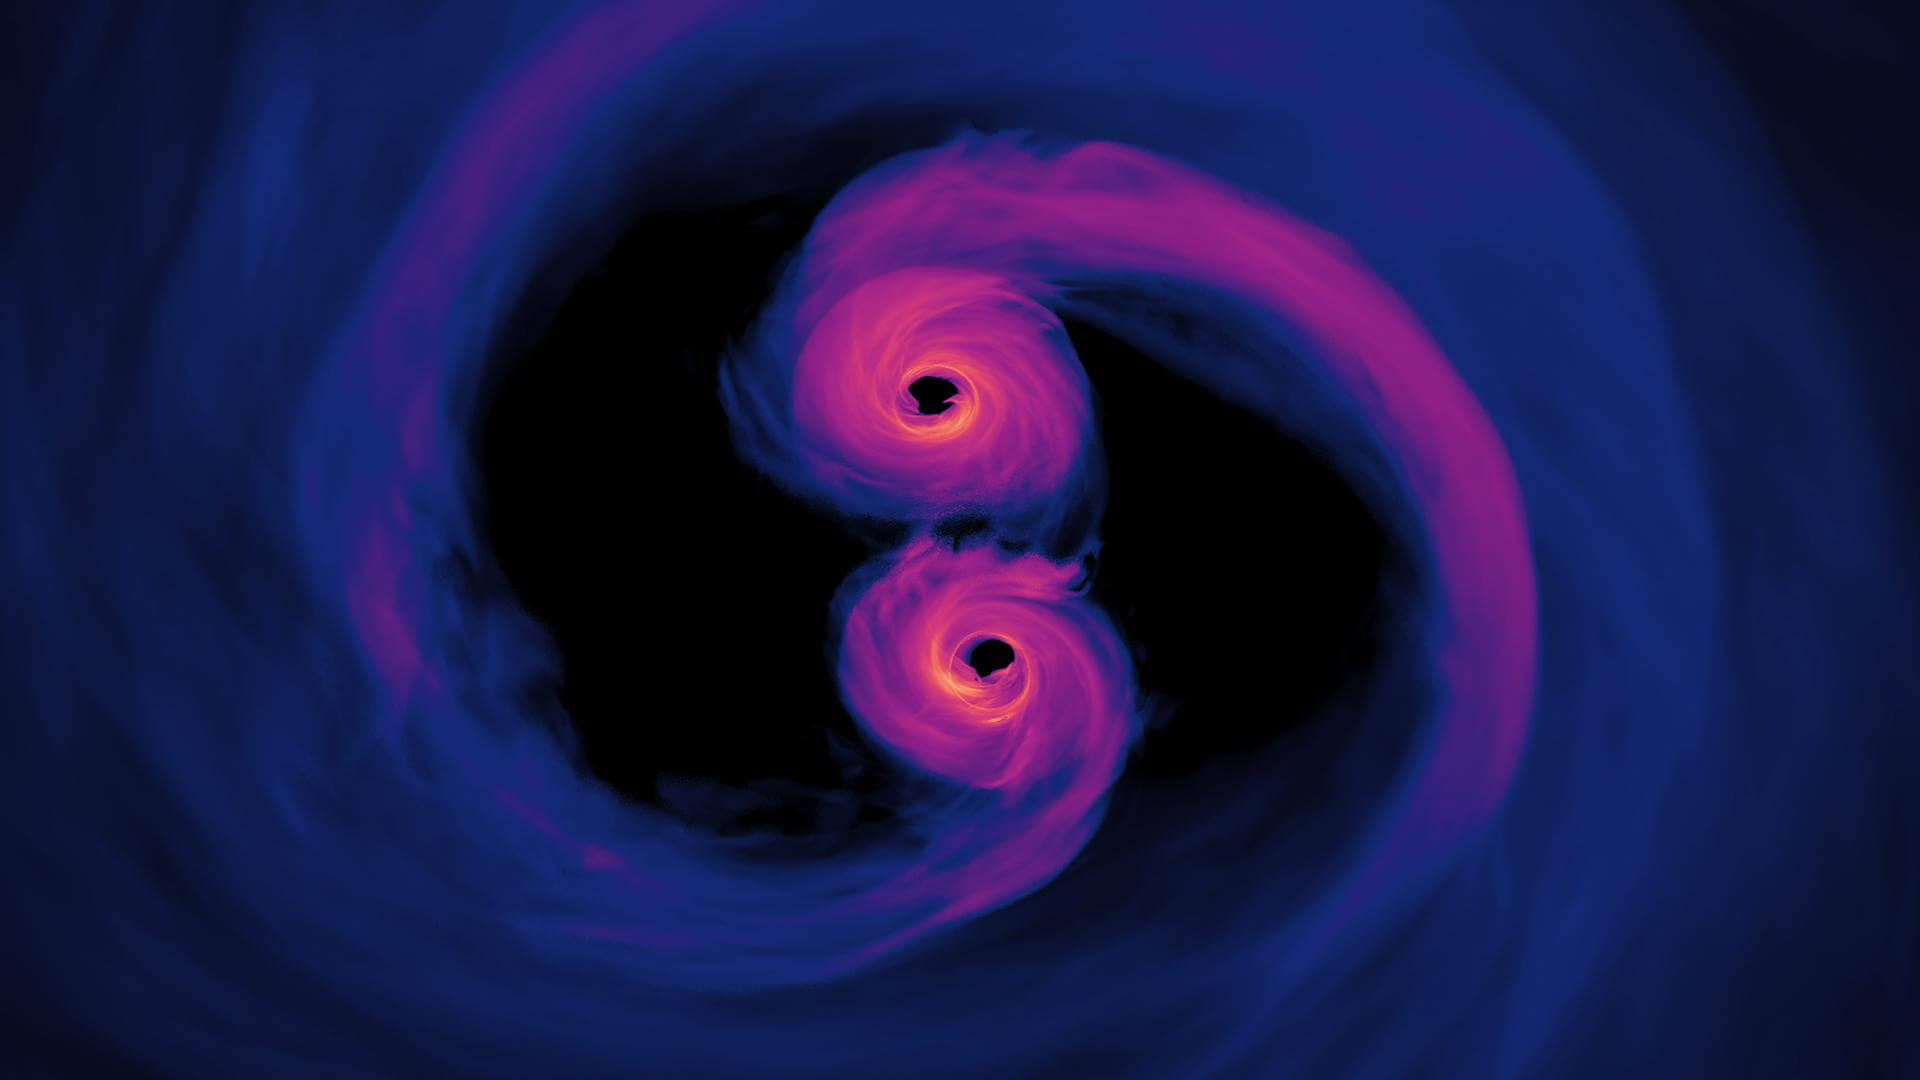 gravity www lt;pgt;Черные дыры - одни из самых загадочных объектов на просторах Вселенной. И хотя физики давно догадывались об их существовании, статус реальных космических обитателей черные дыры получили несколько лет назад. Открытие гравитационных волн в 2017 году и первый снимок черной дыры (2019 год) ознаменовали собой новую эру космических исследований - в самом ближайшем будущем мы узнаем много нового о Вселенной и существующих на ее просторах объектах. Так, недавно в журнале Physical Review Letters вышла статья, авторы которой утверждают что эти космические монстры обладают уникальными и причудливыми квантовыми свойствами. Новое исследование имеет отношение к теории квантовой гравитации - одной из нерешенных загадок современной науки. В основе работы лежит компьютерное моделирование - с его помощью физики обнаружили что черные дыры обладают свойствами, характерными для квантовых частиц. Удивительно, но исследователи полагают, что эти космические монстры могут быть одновременно маленькими и большими, тяжелыми и легкими, мертвыми и живыми.